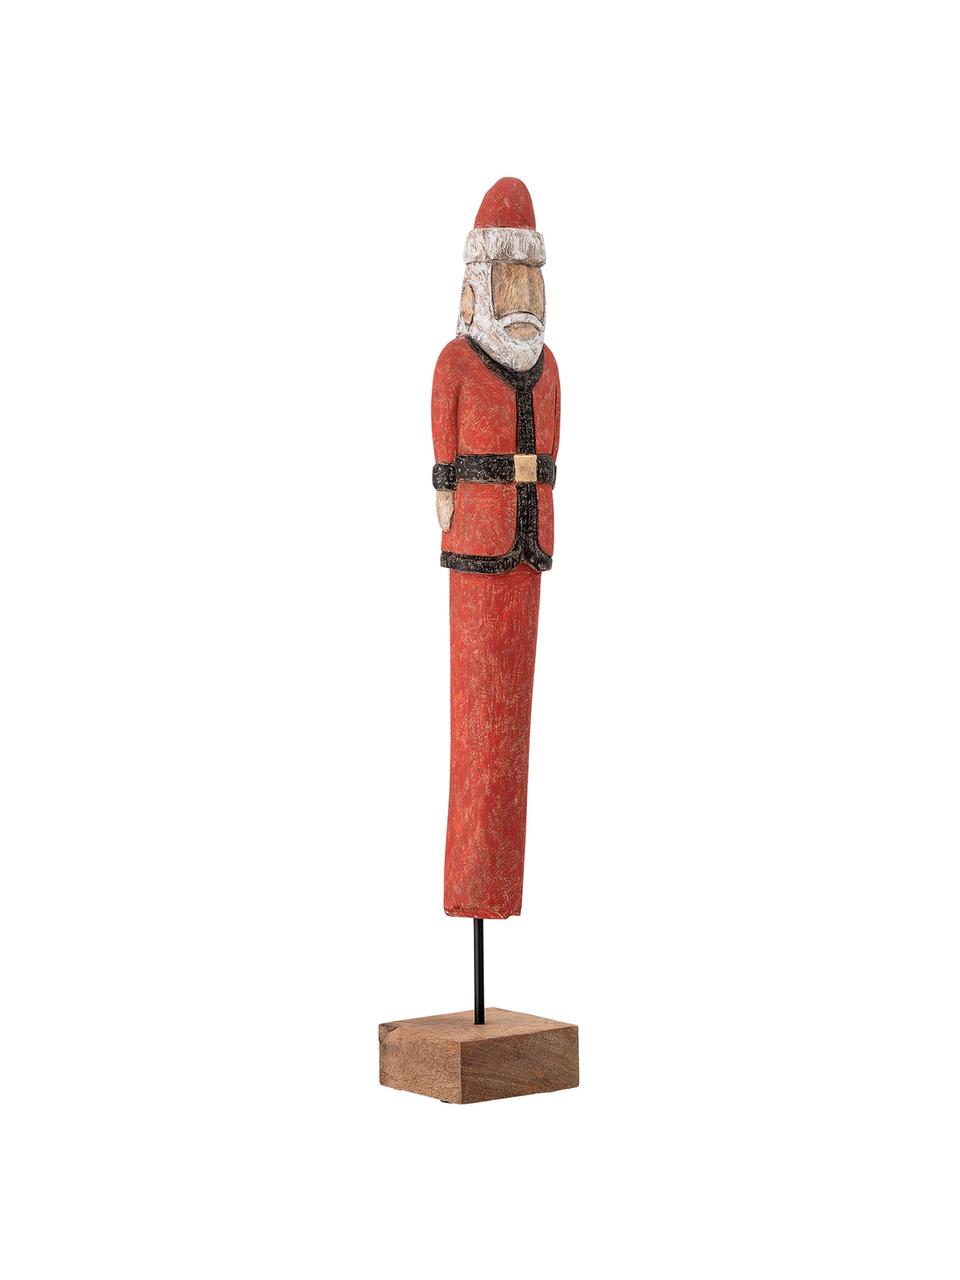 Dekorace Santa, V 56 cm, Potažené mangové dřevo, kov, Červená, černá, bílá, hnědá, Š 10 cm, V 56 cm